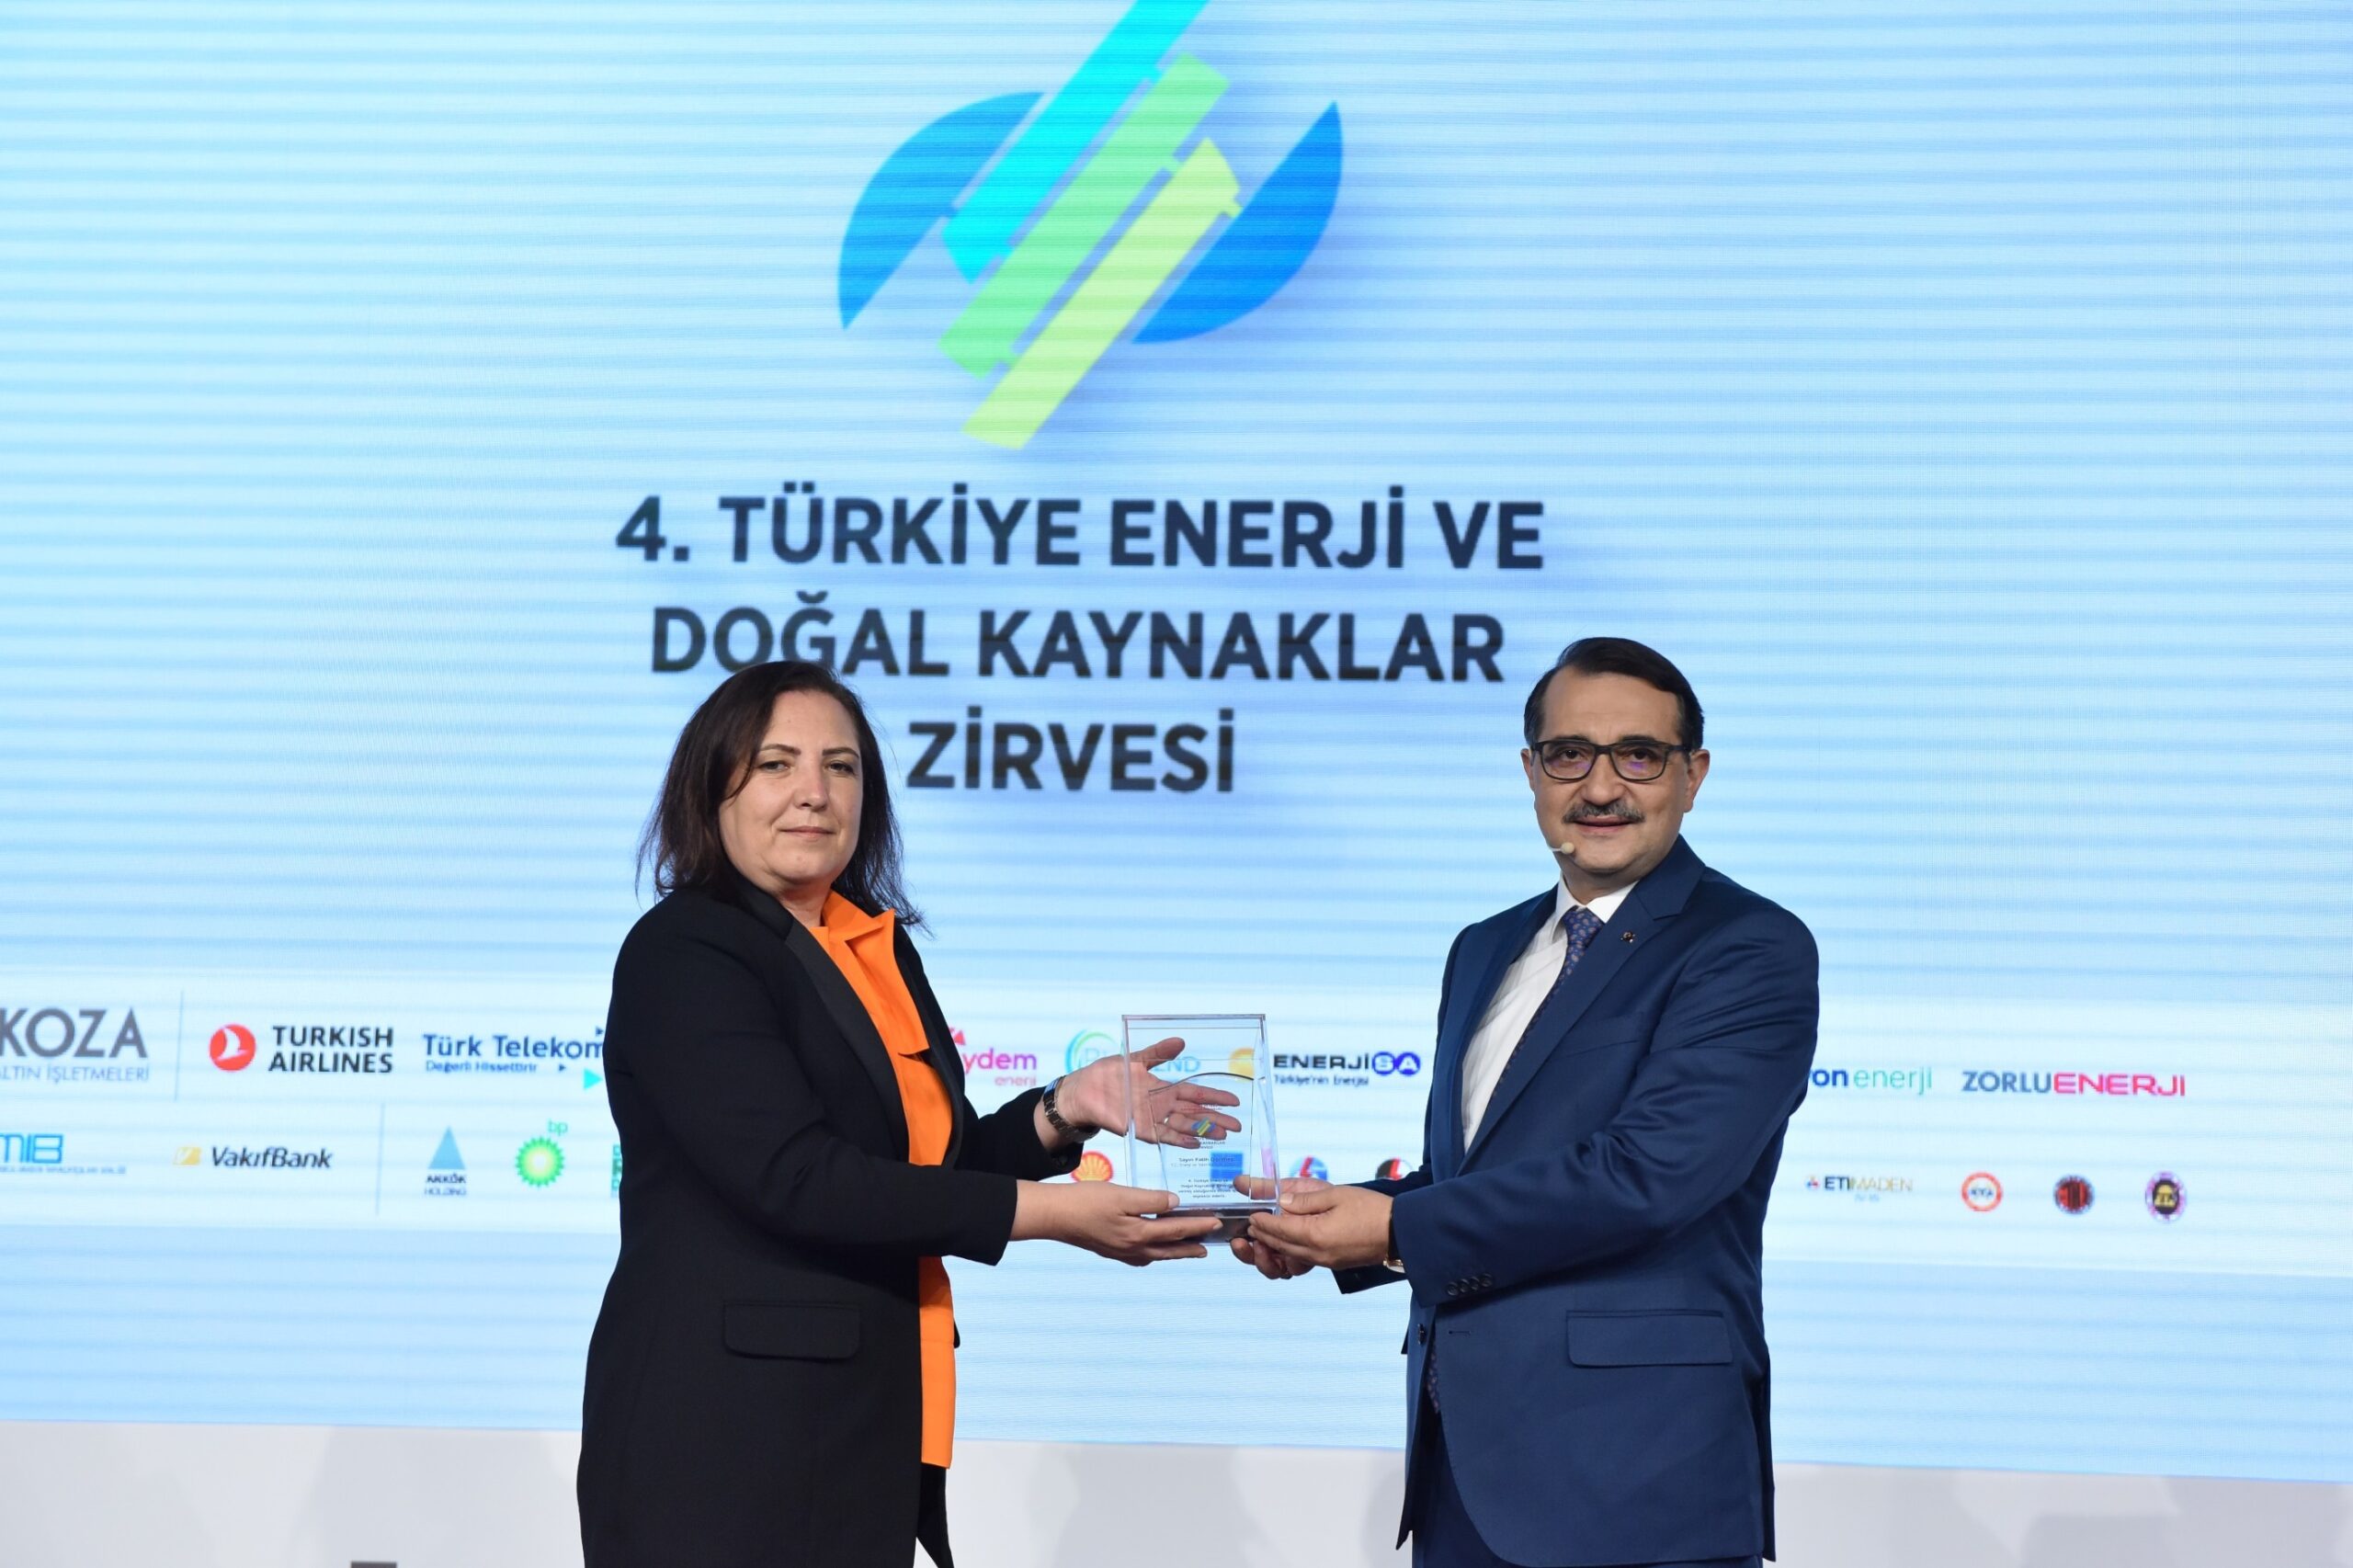 4. Türkiye Enerji ve Doğal Kaynaklar zirvesi